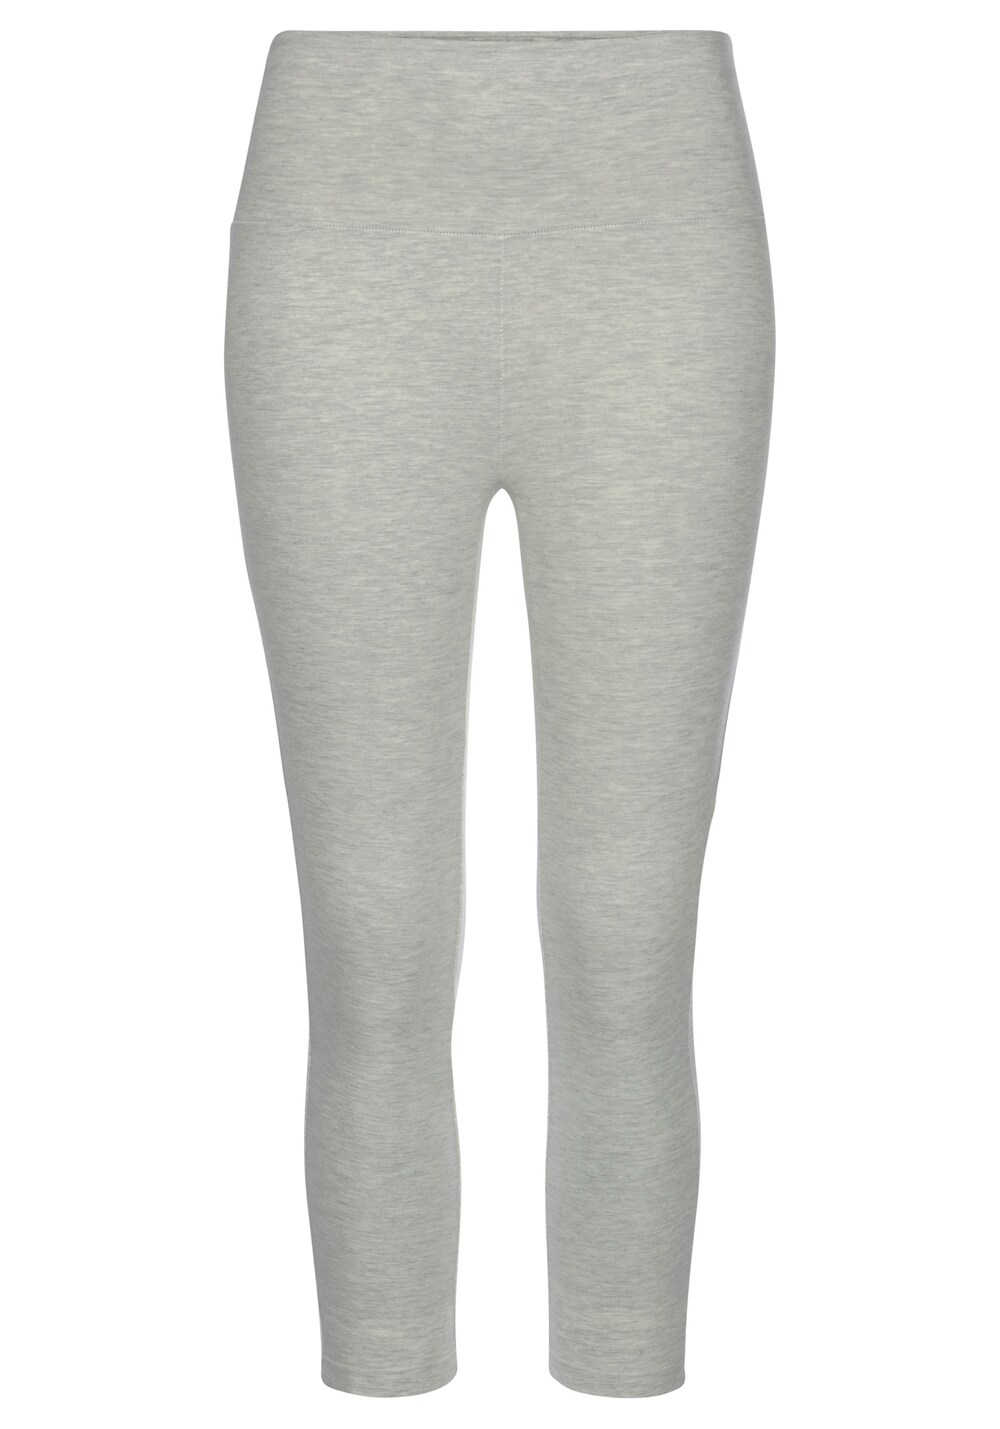 Узкие пижамные брюки LASCANA, пестрый серый узкие брюки lascana серый